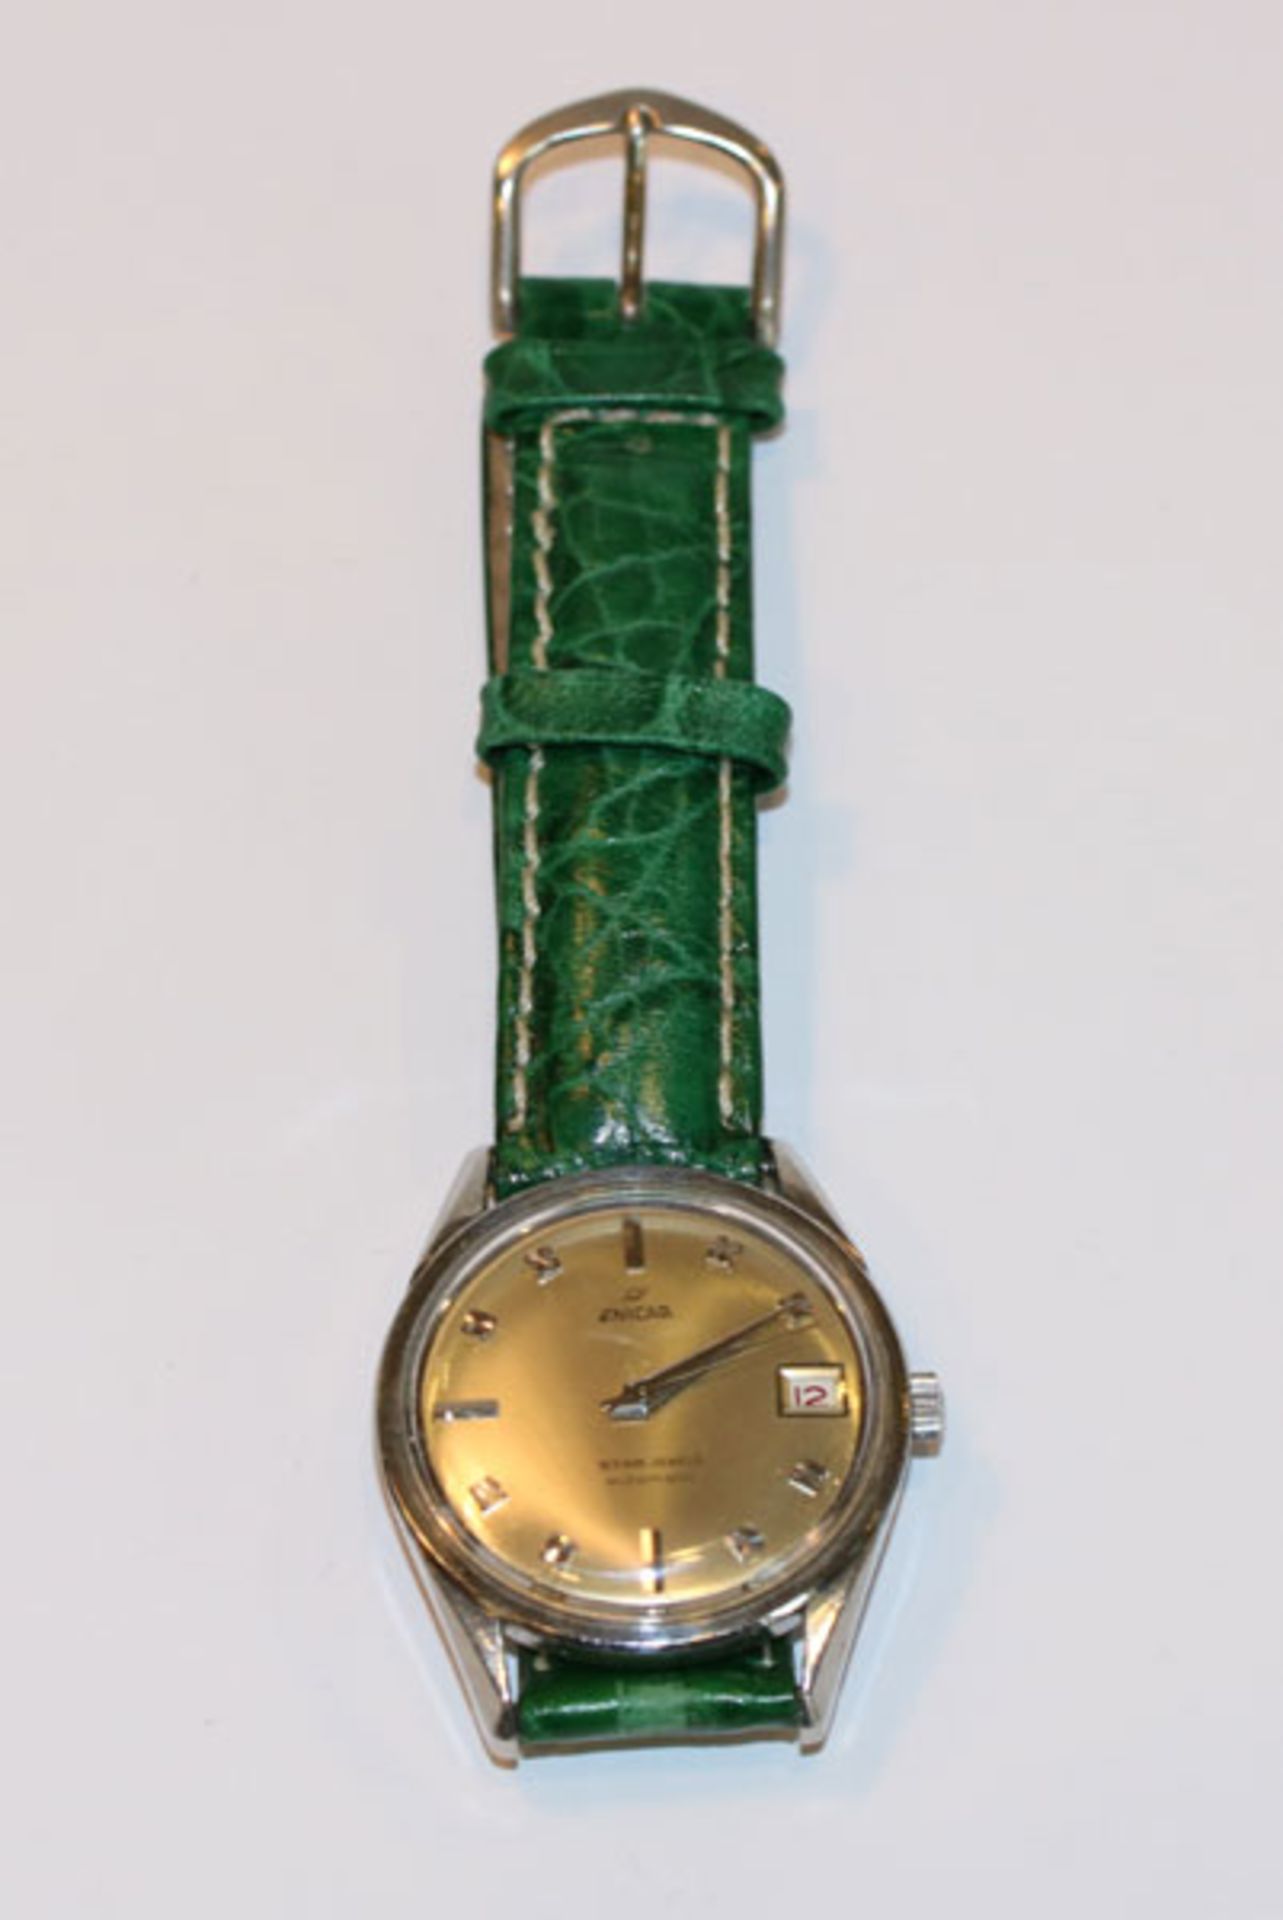 Enicar Herren Armbanduhr, Star Jewels automatic, gute Schweizer Uhr mit Datumsanzeige, intakt, an